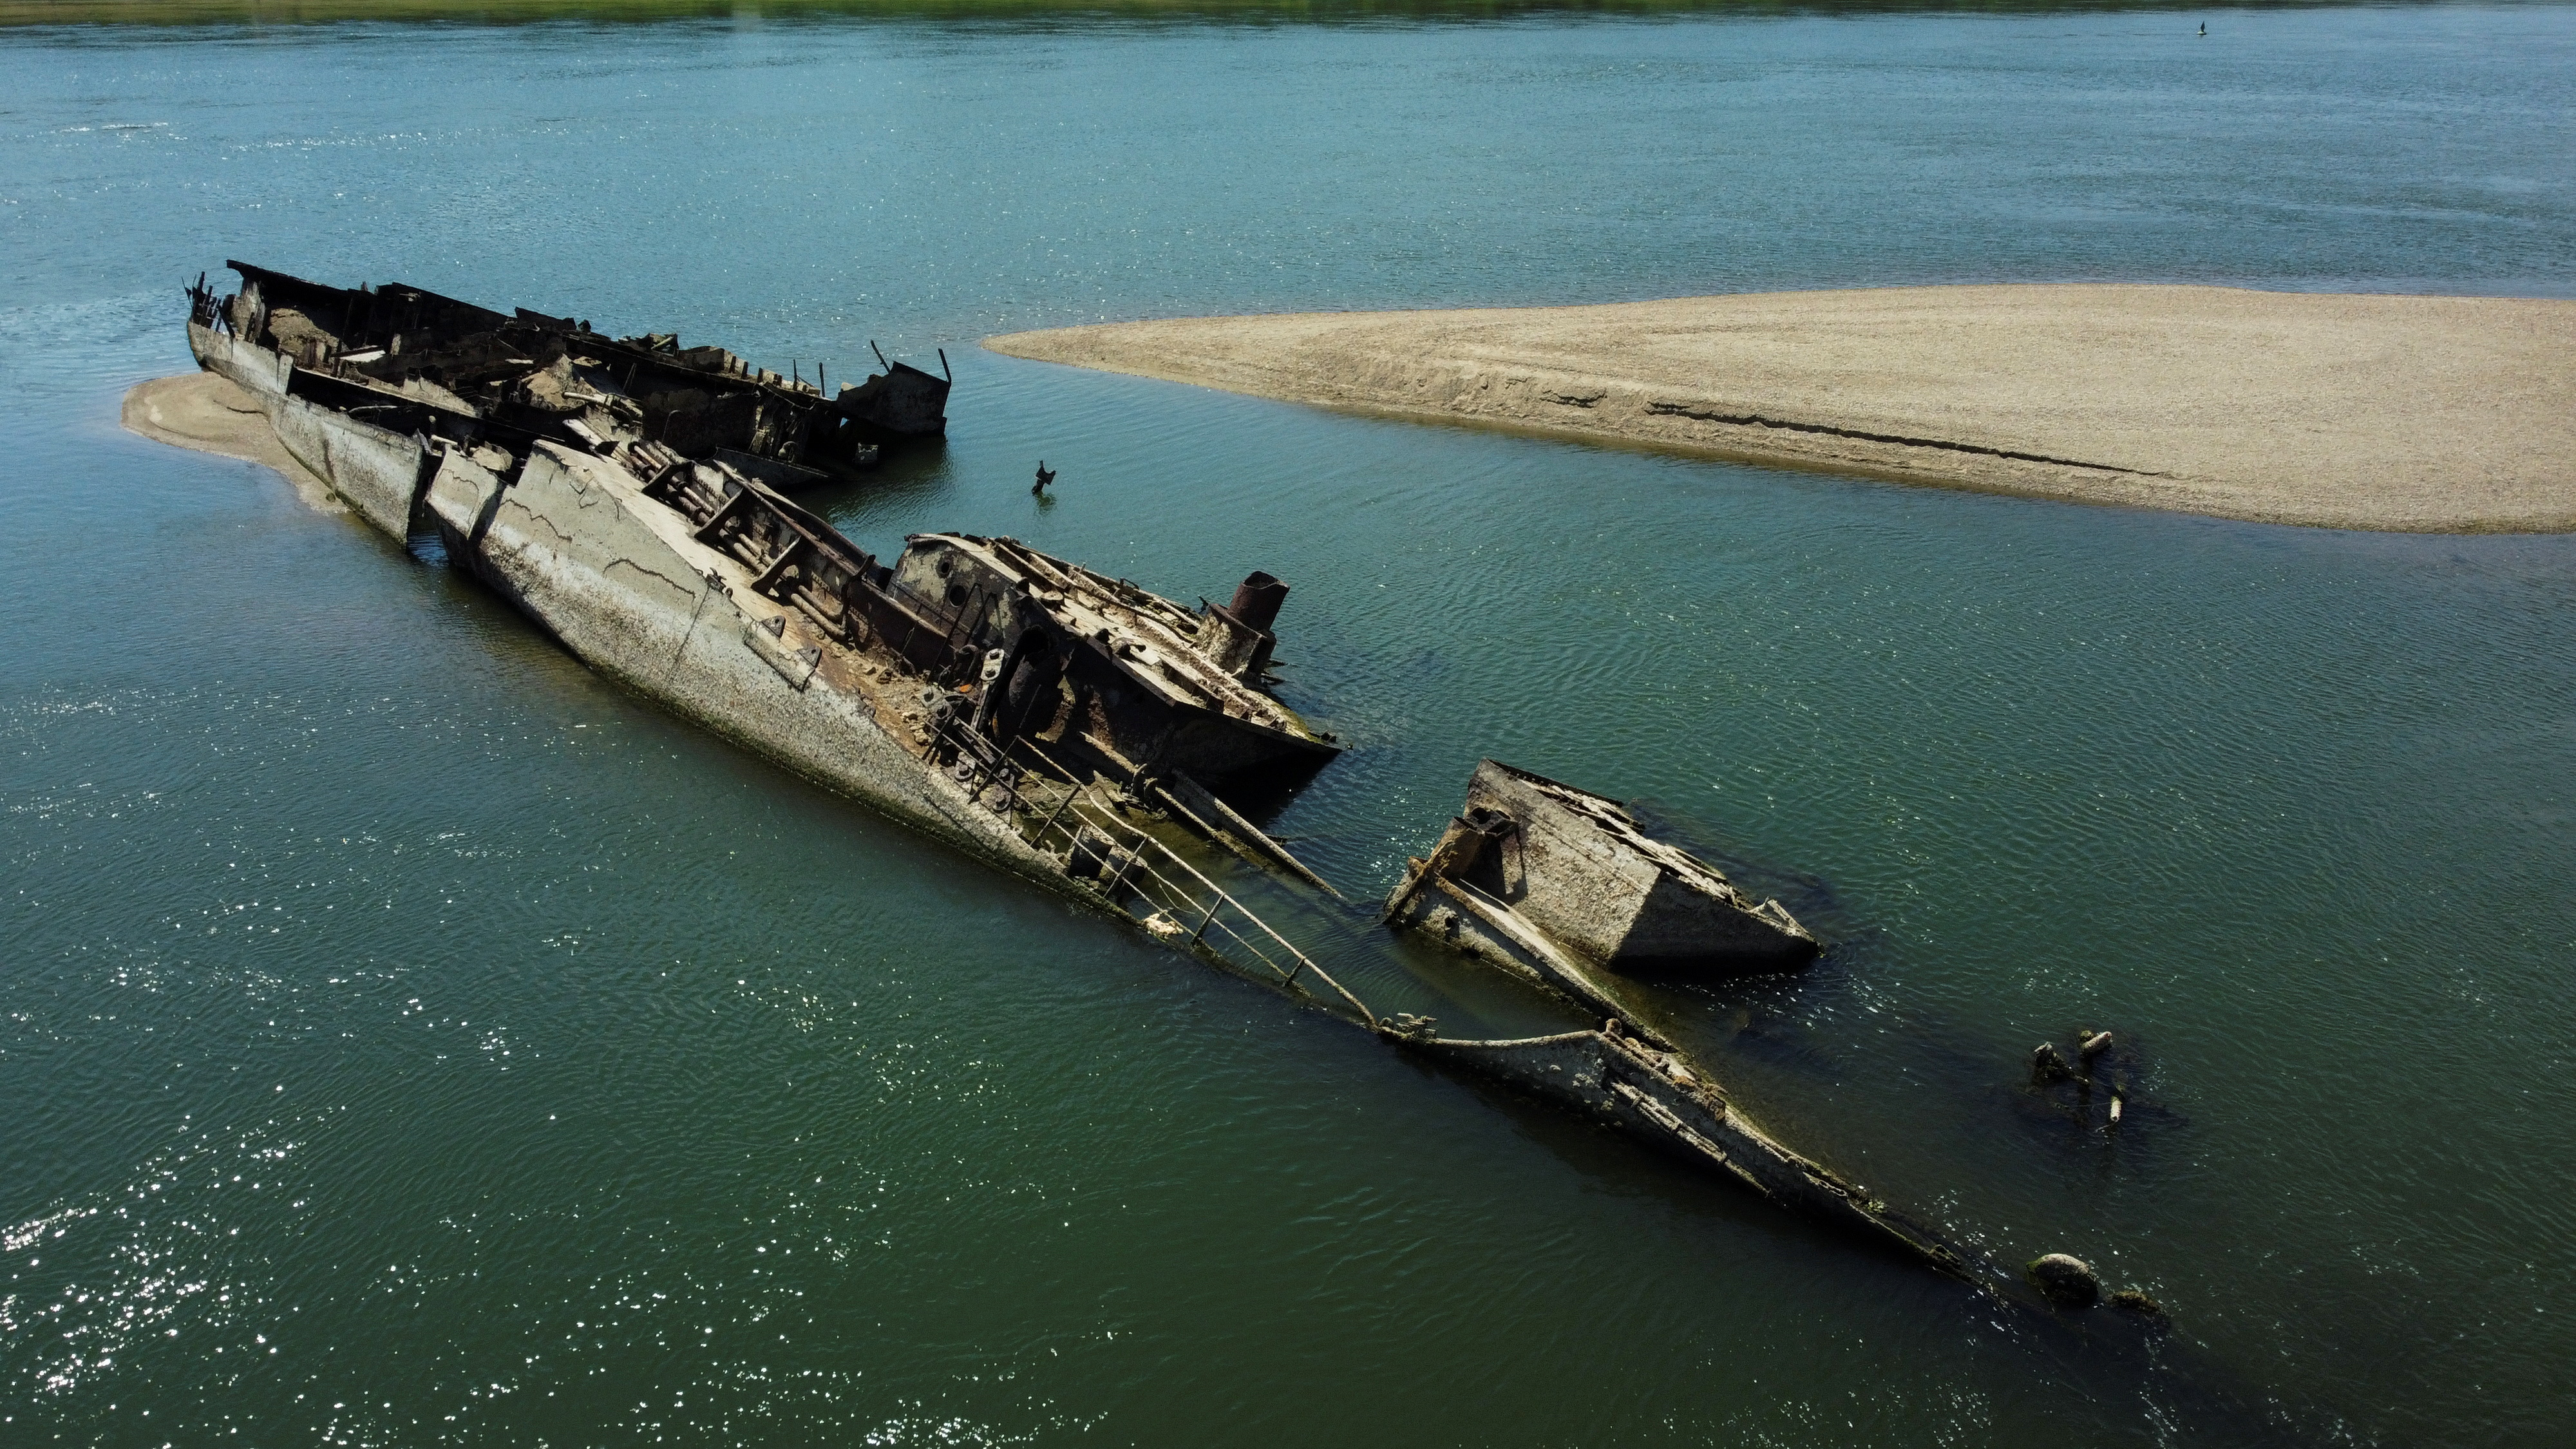 Low water levels on Danube reveal sunken WW2 German warships